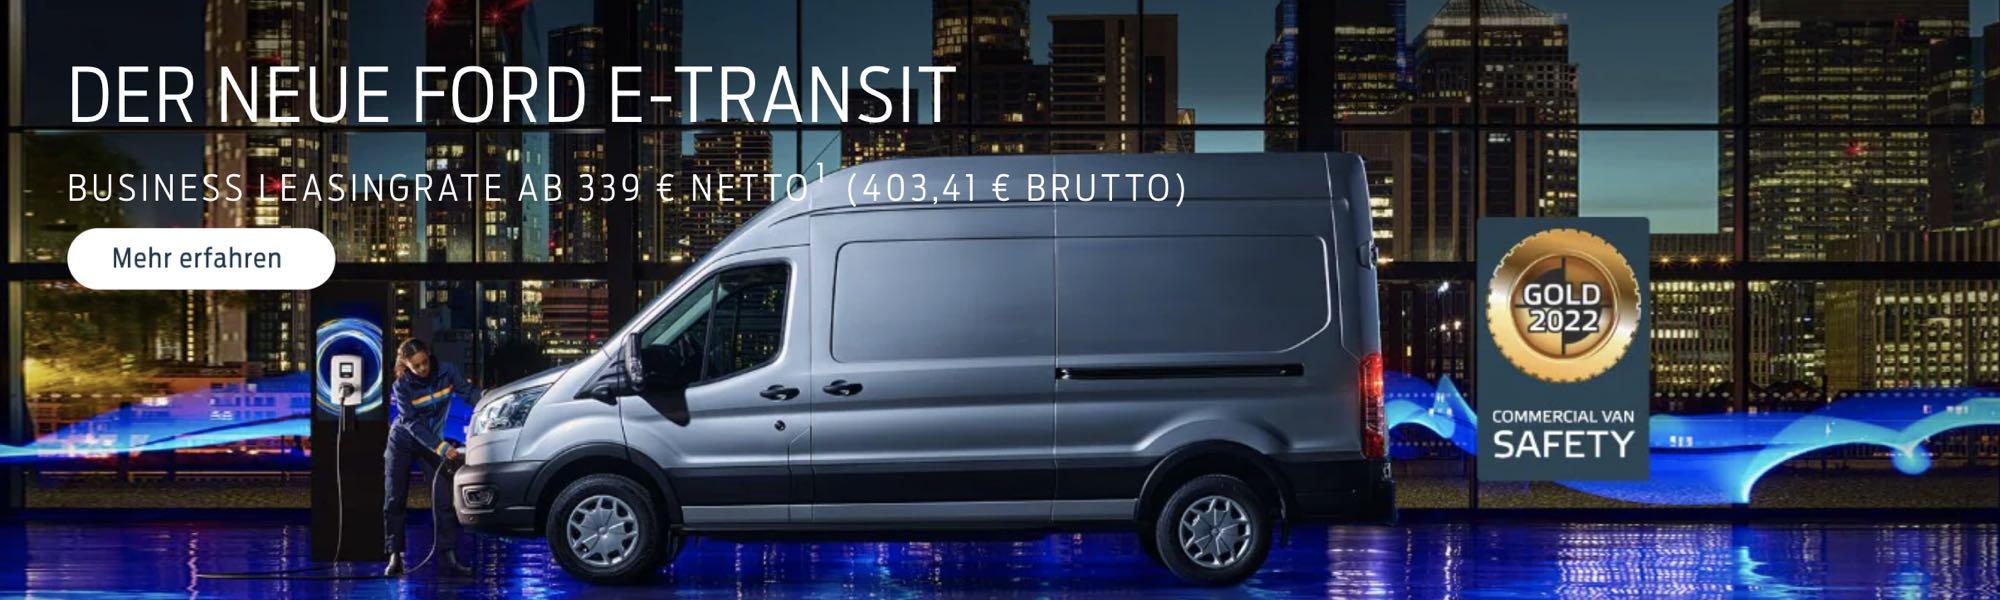 Der neue Ford E-Transit